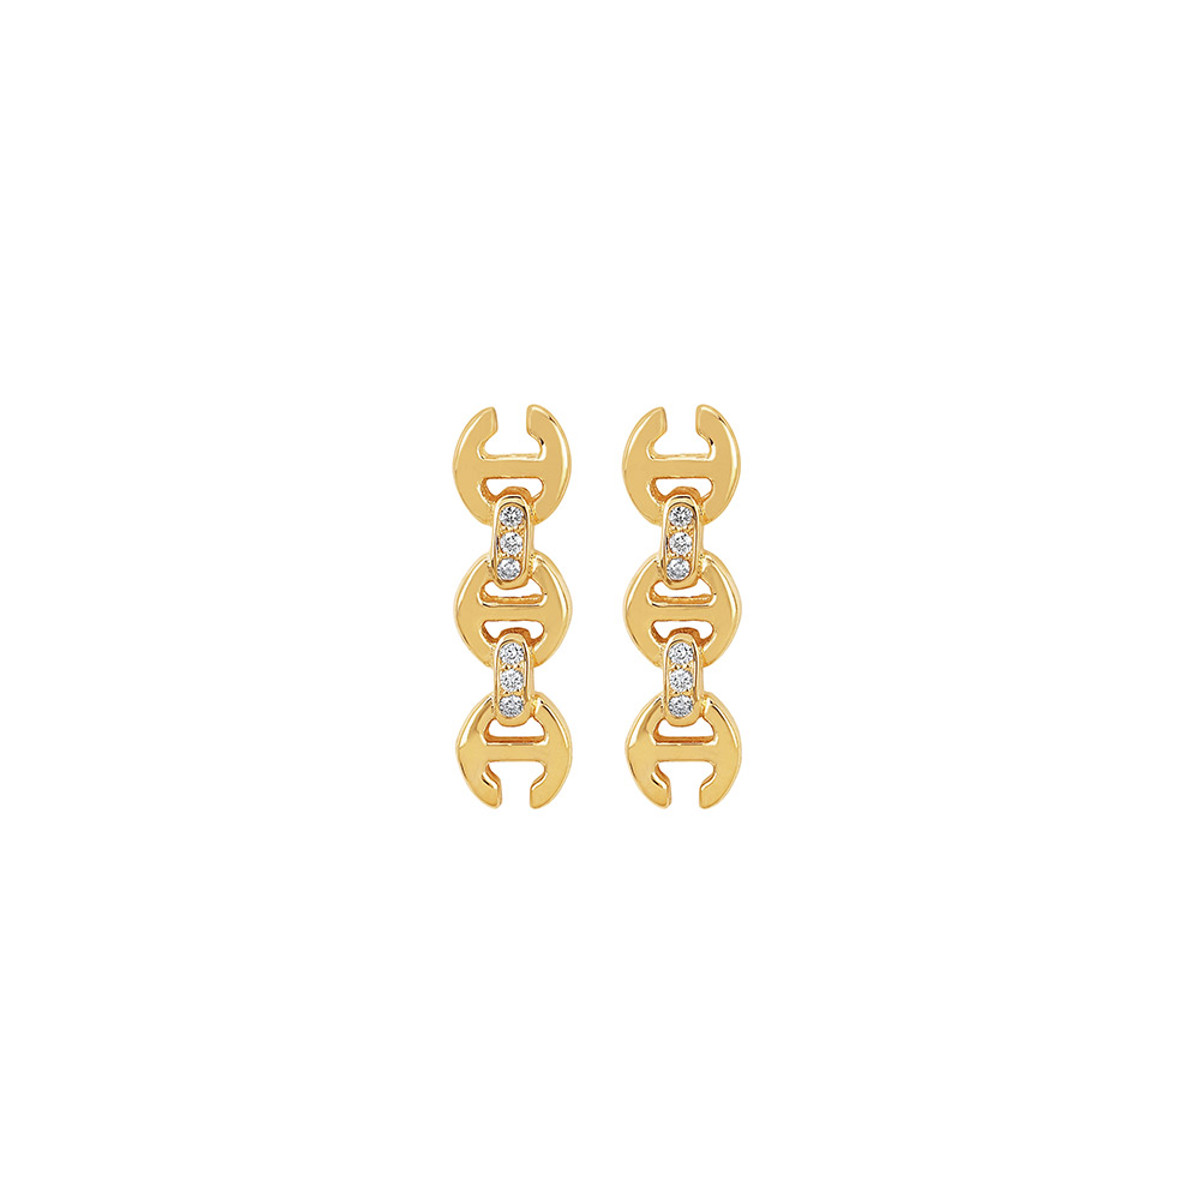 Hoorsenbuhs 18K Yellow Gold 3MM Toggle Stud Earrings with Diamonds-57476